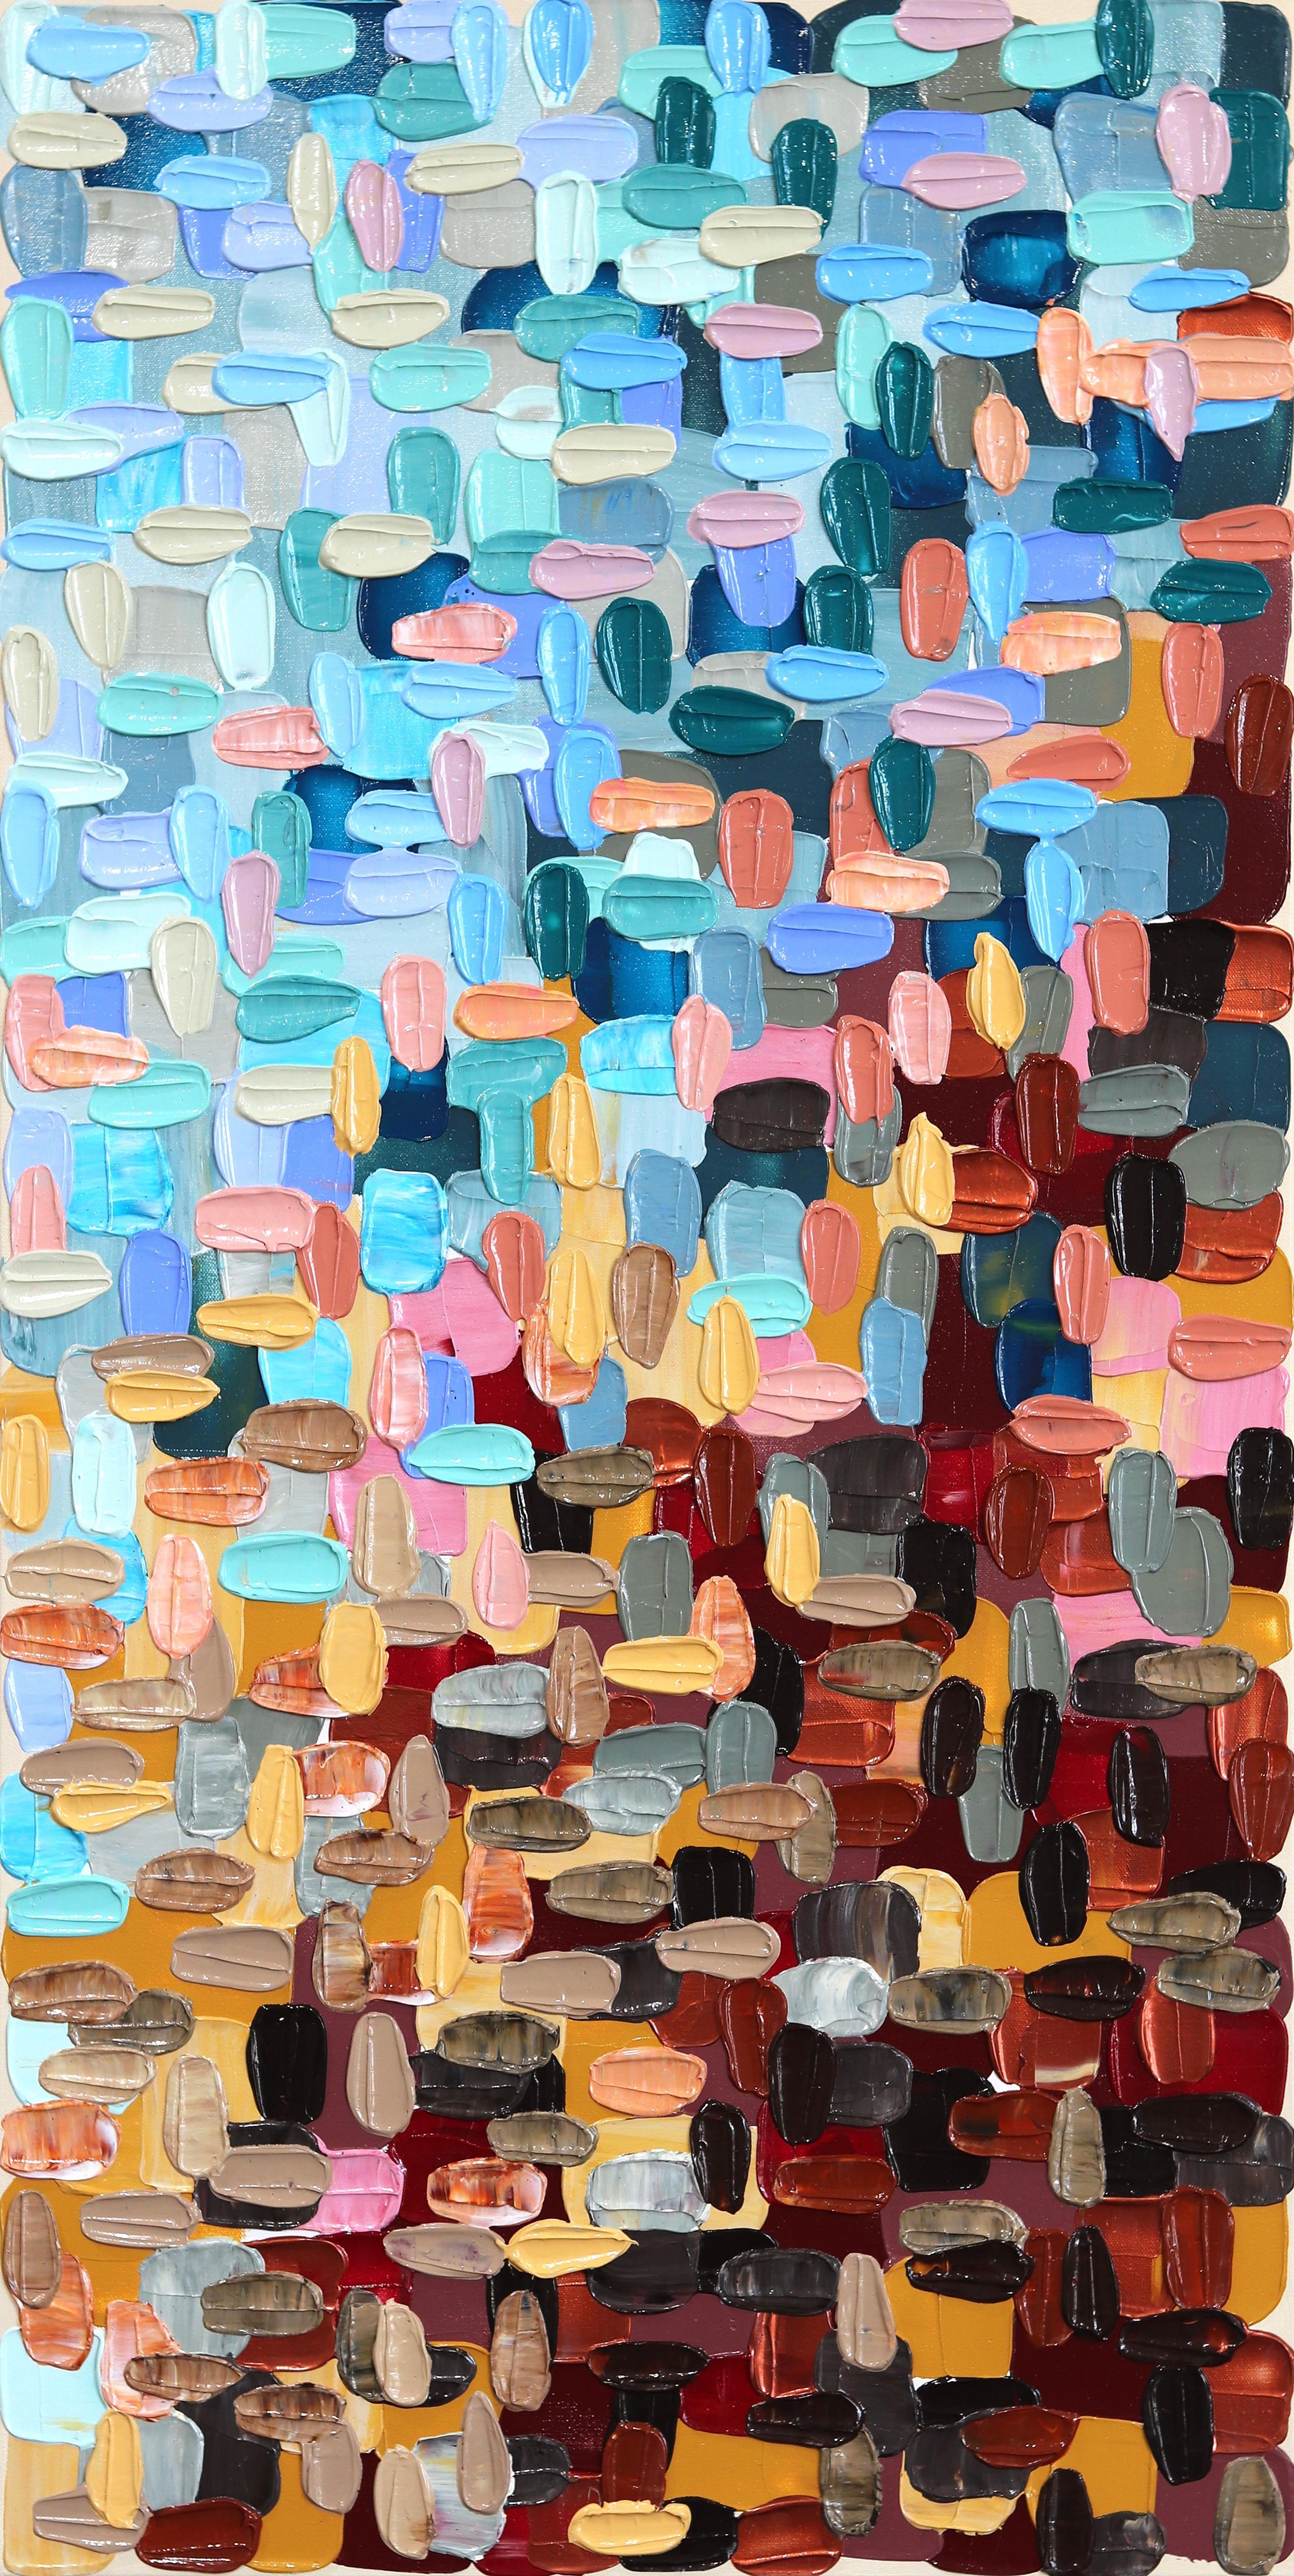 Les collines - Peinture épaisse et colorée - Grande peinture abstraite - Art de Shiri Phillips